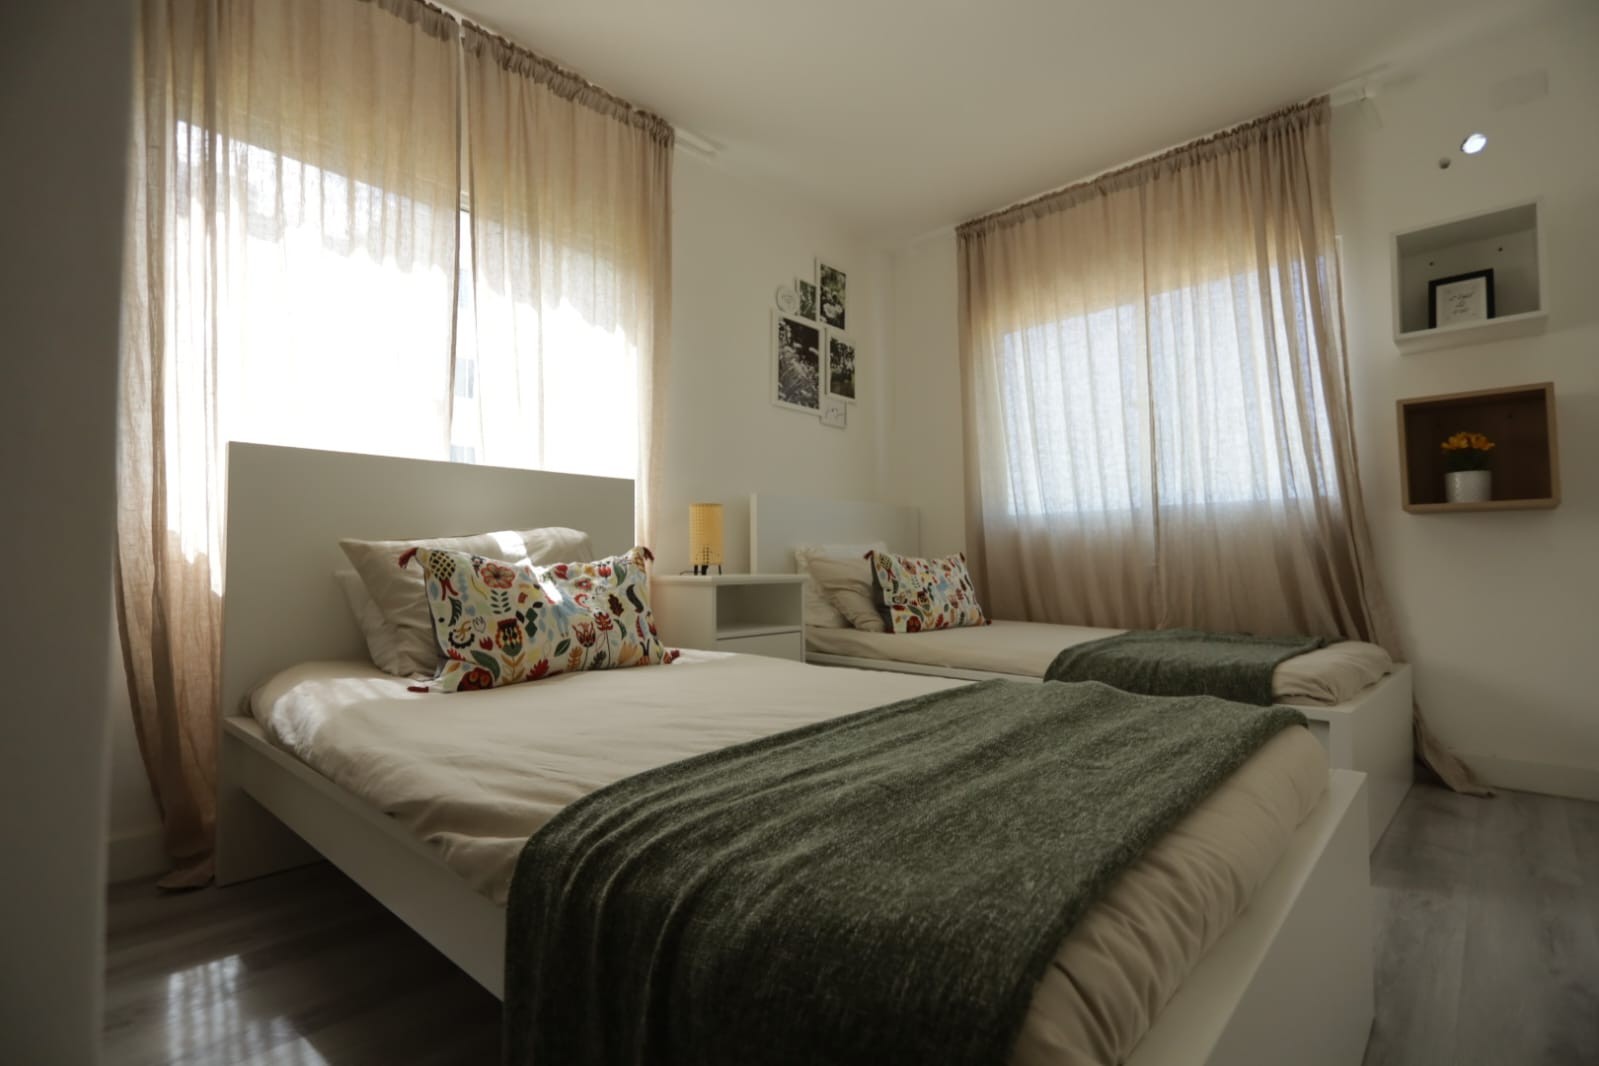 apartamentos - Se vende proyecto residencial en Santo Domingo Norte

US$75,000 9